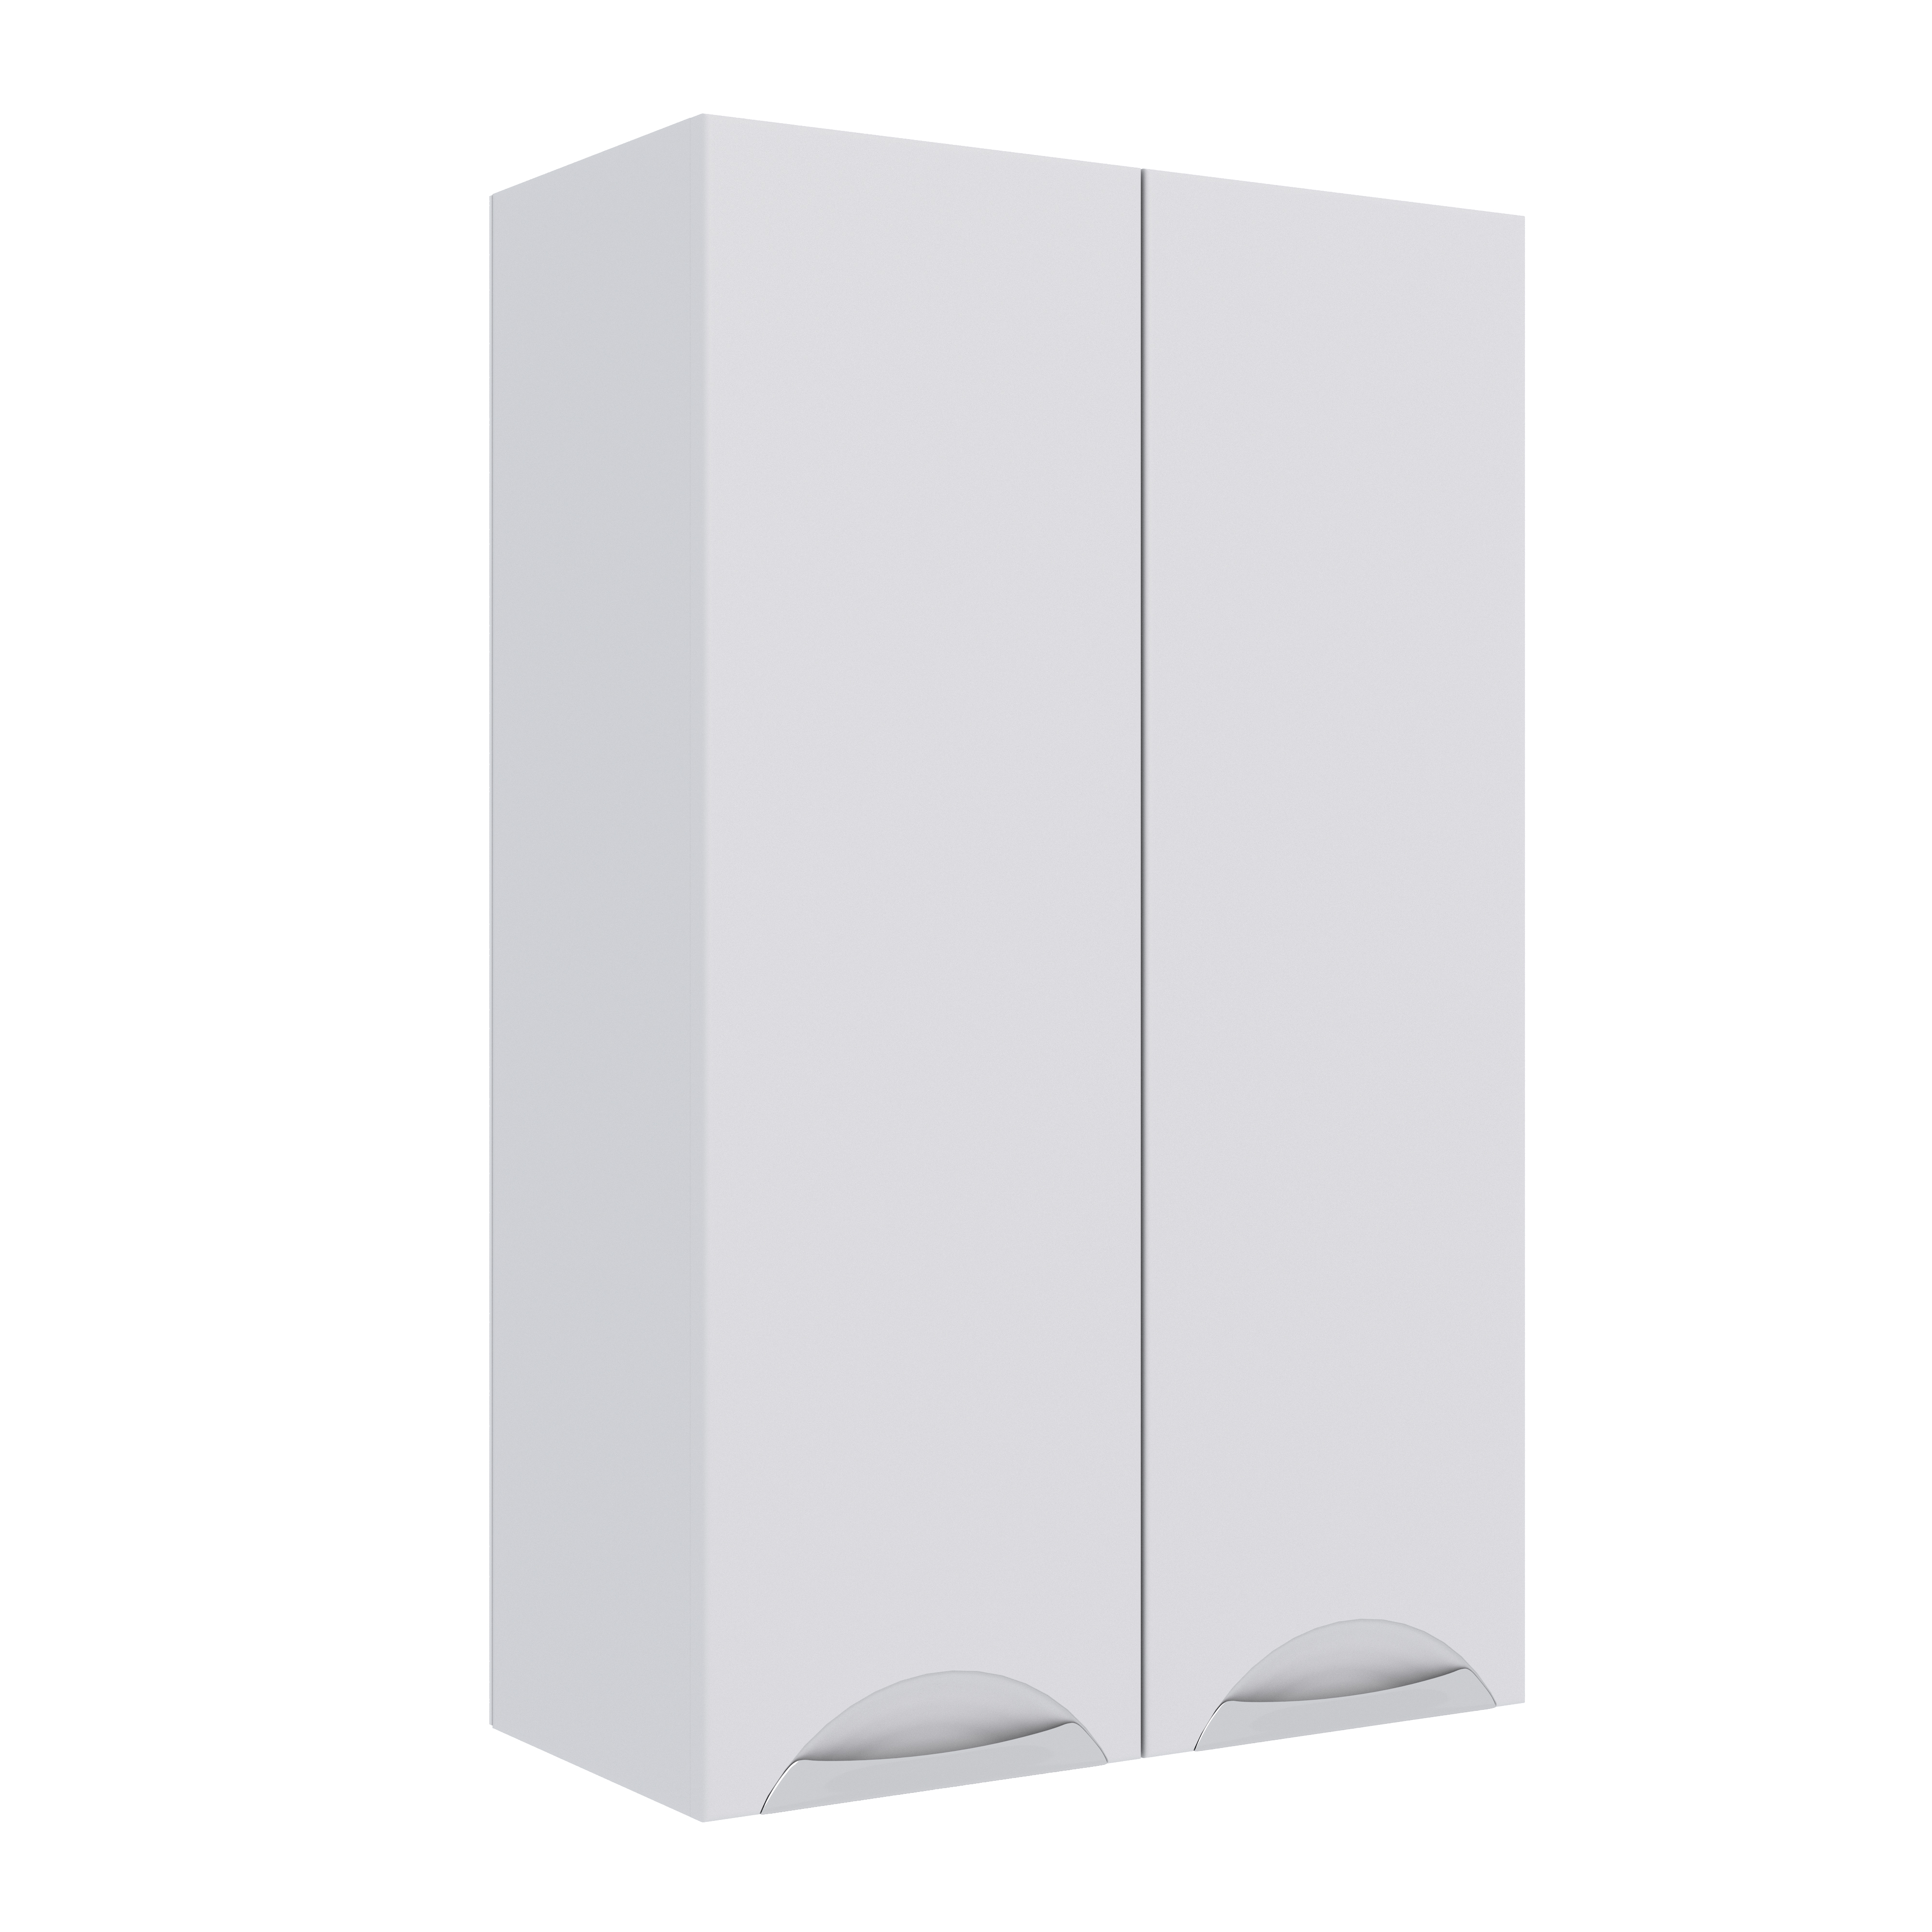 Шкаф навесной для ванной 60. Шкаф/Элеганс/ белый/навесной(60см)размер. Шкаф навесной 1200 белый. De Aqua шкаф подвесной для ванной.